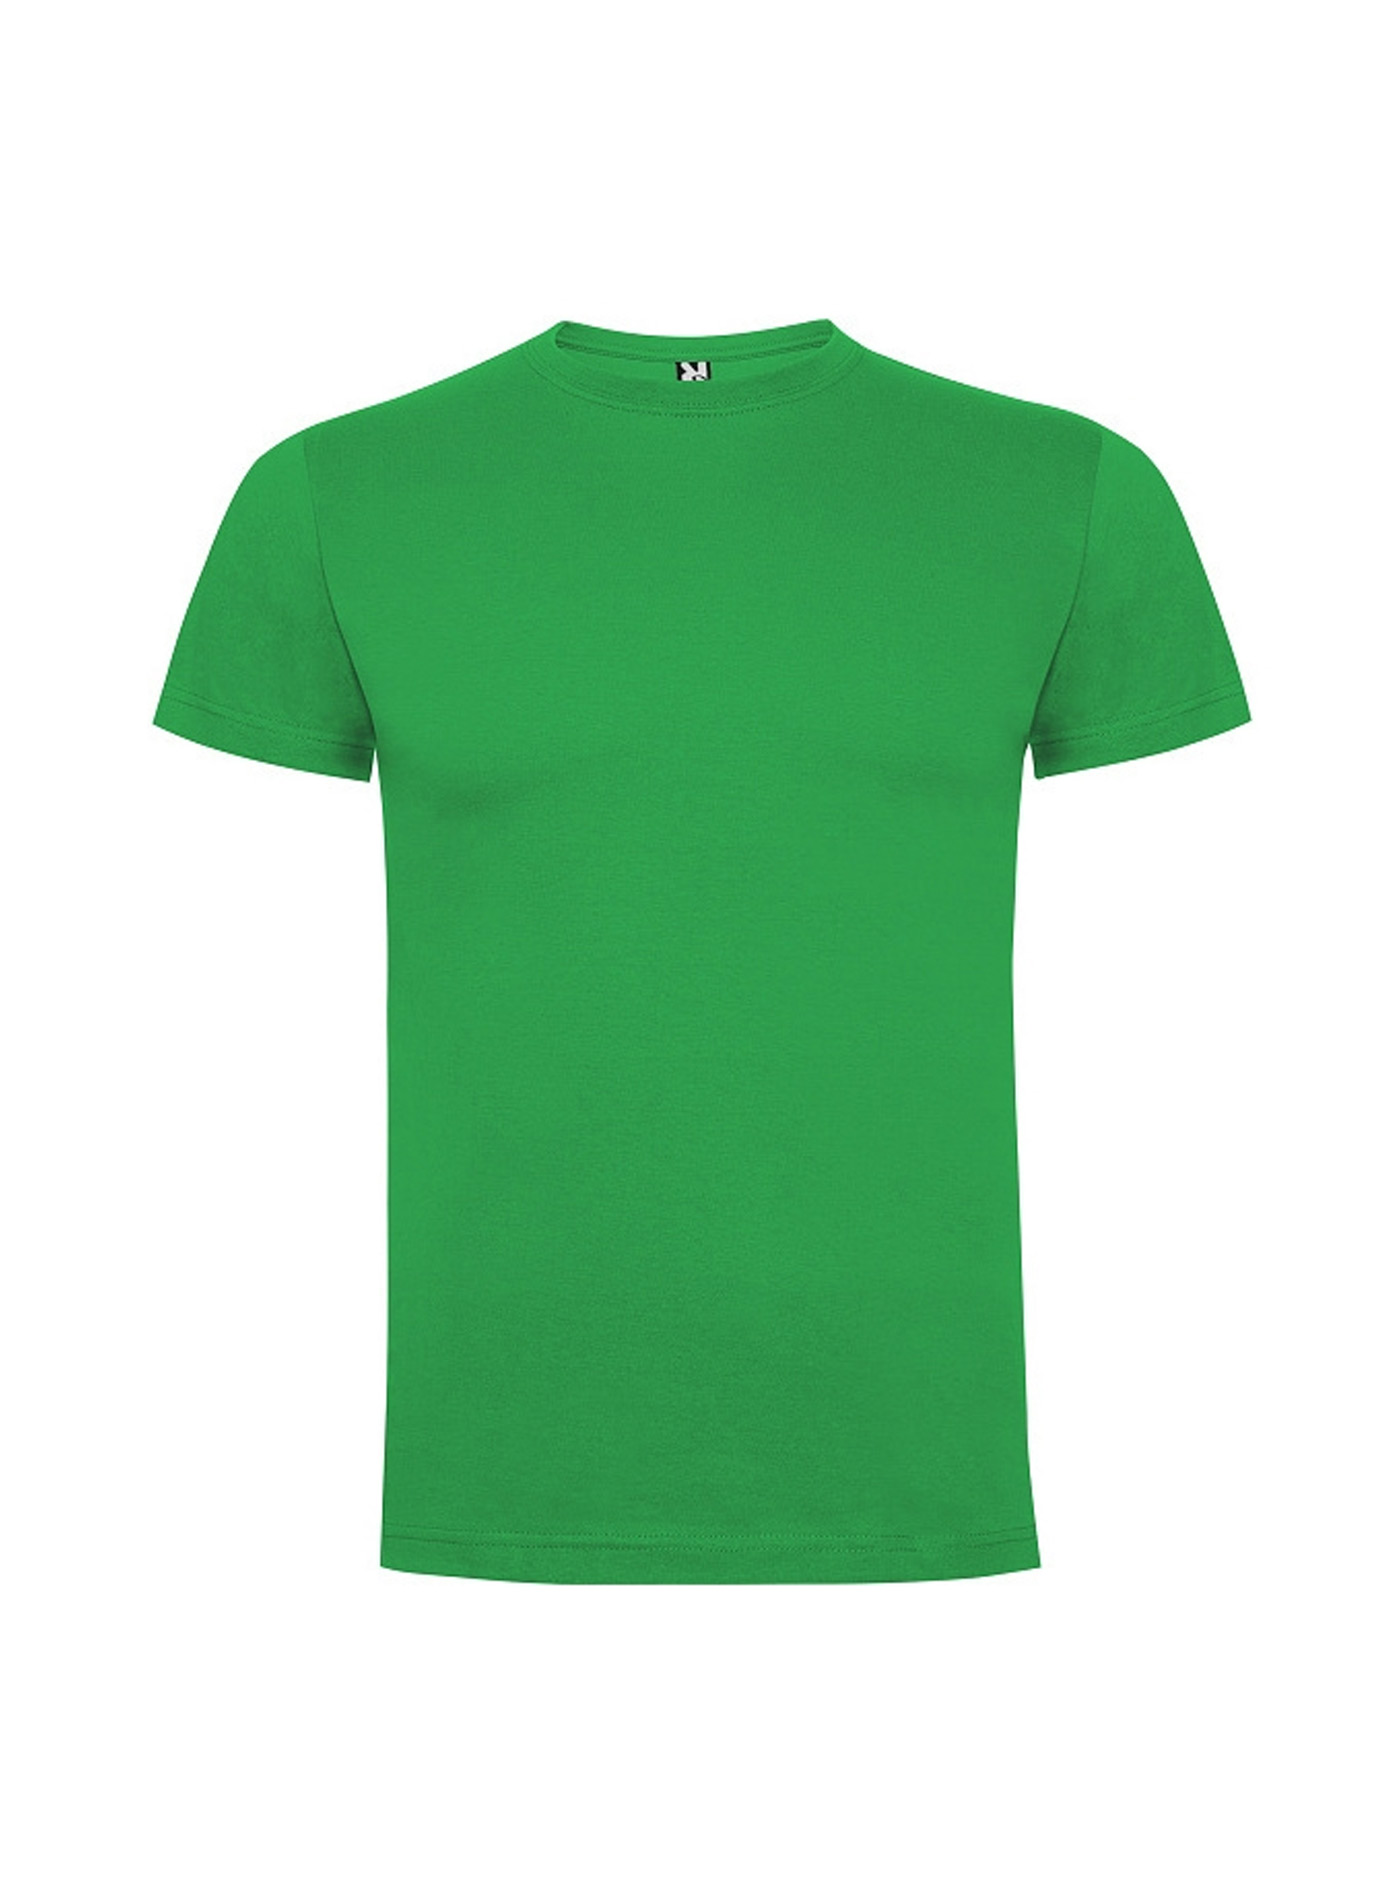 Dětské tričko Roly Dogo premium - Irská zelená 5-6